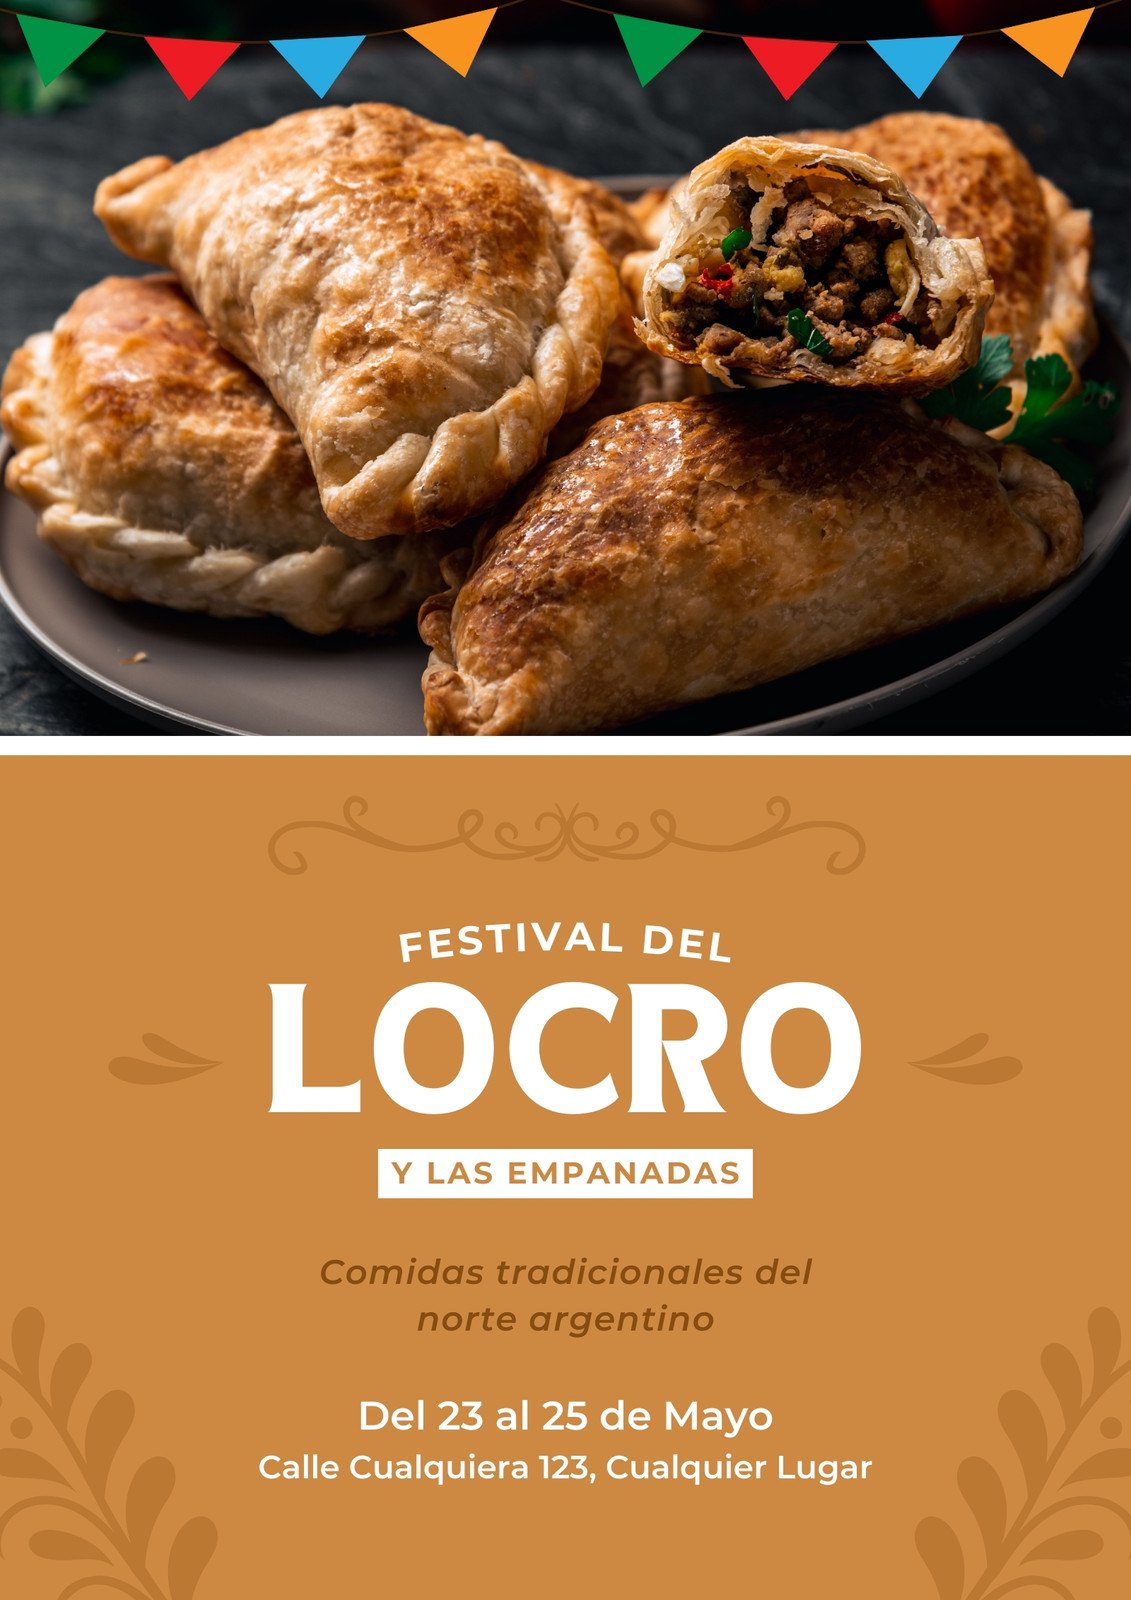 Flyer A4 Festival del Locro y las Empanadas Simple tradicional marrón blanco